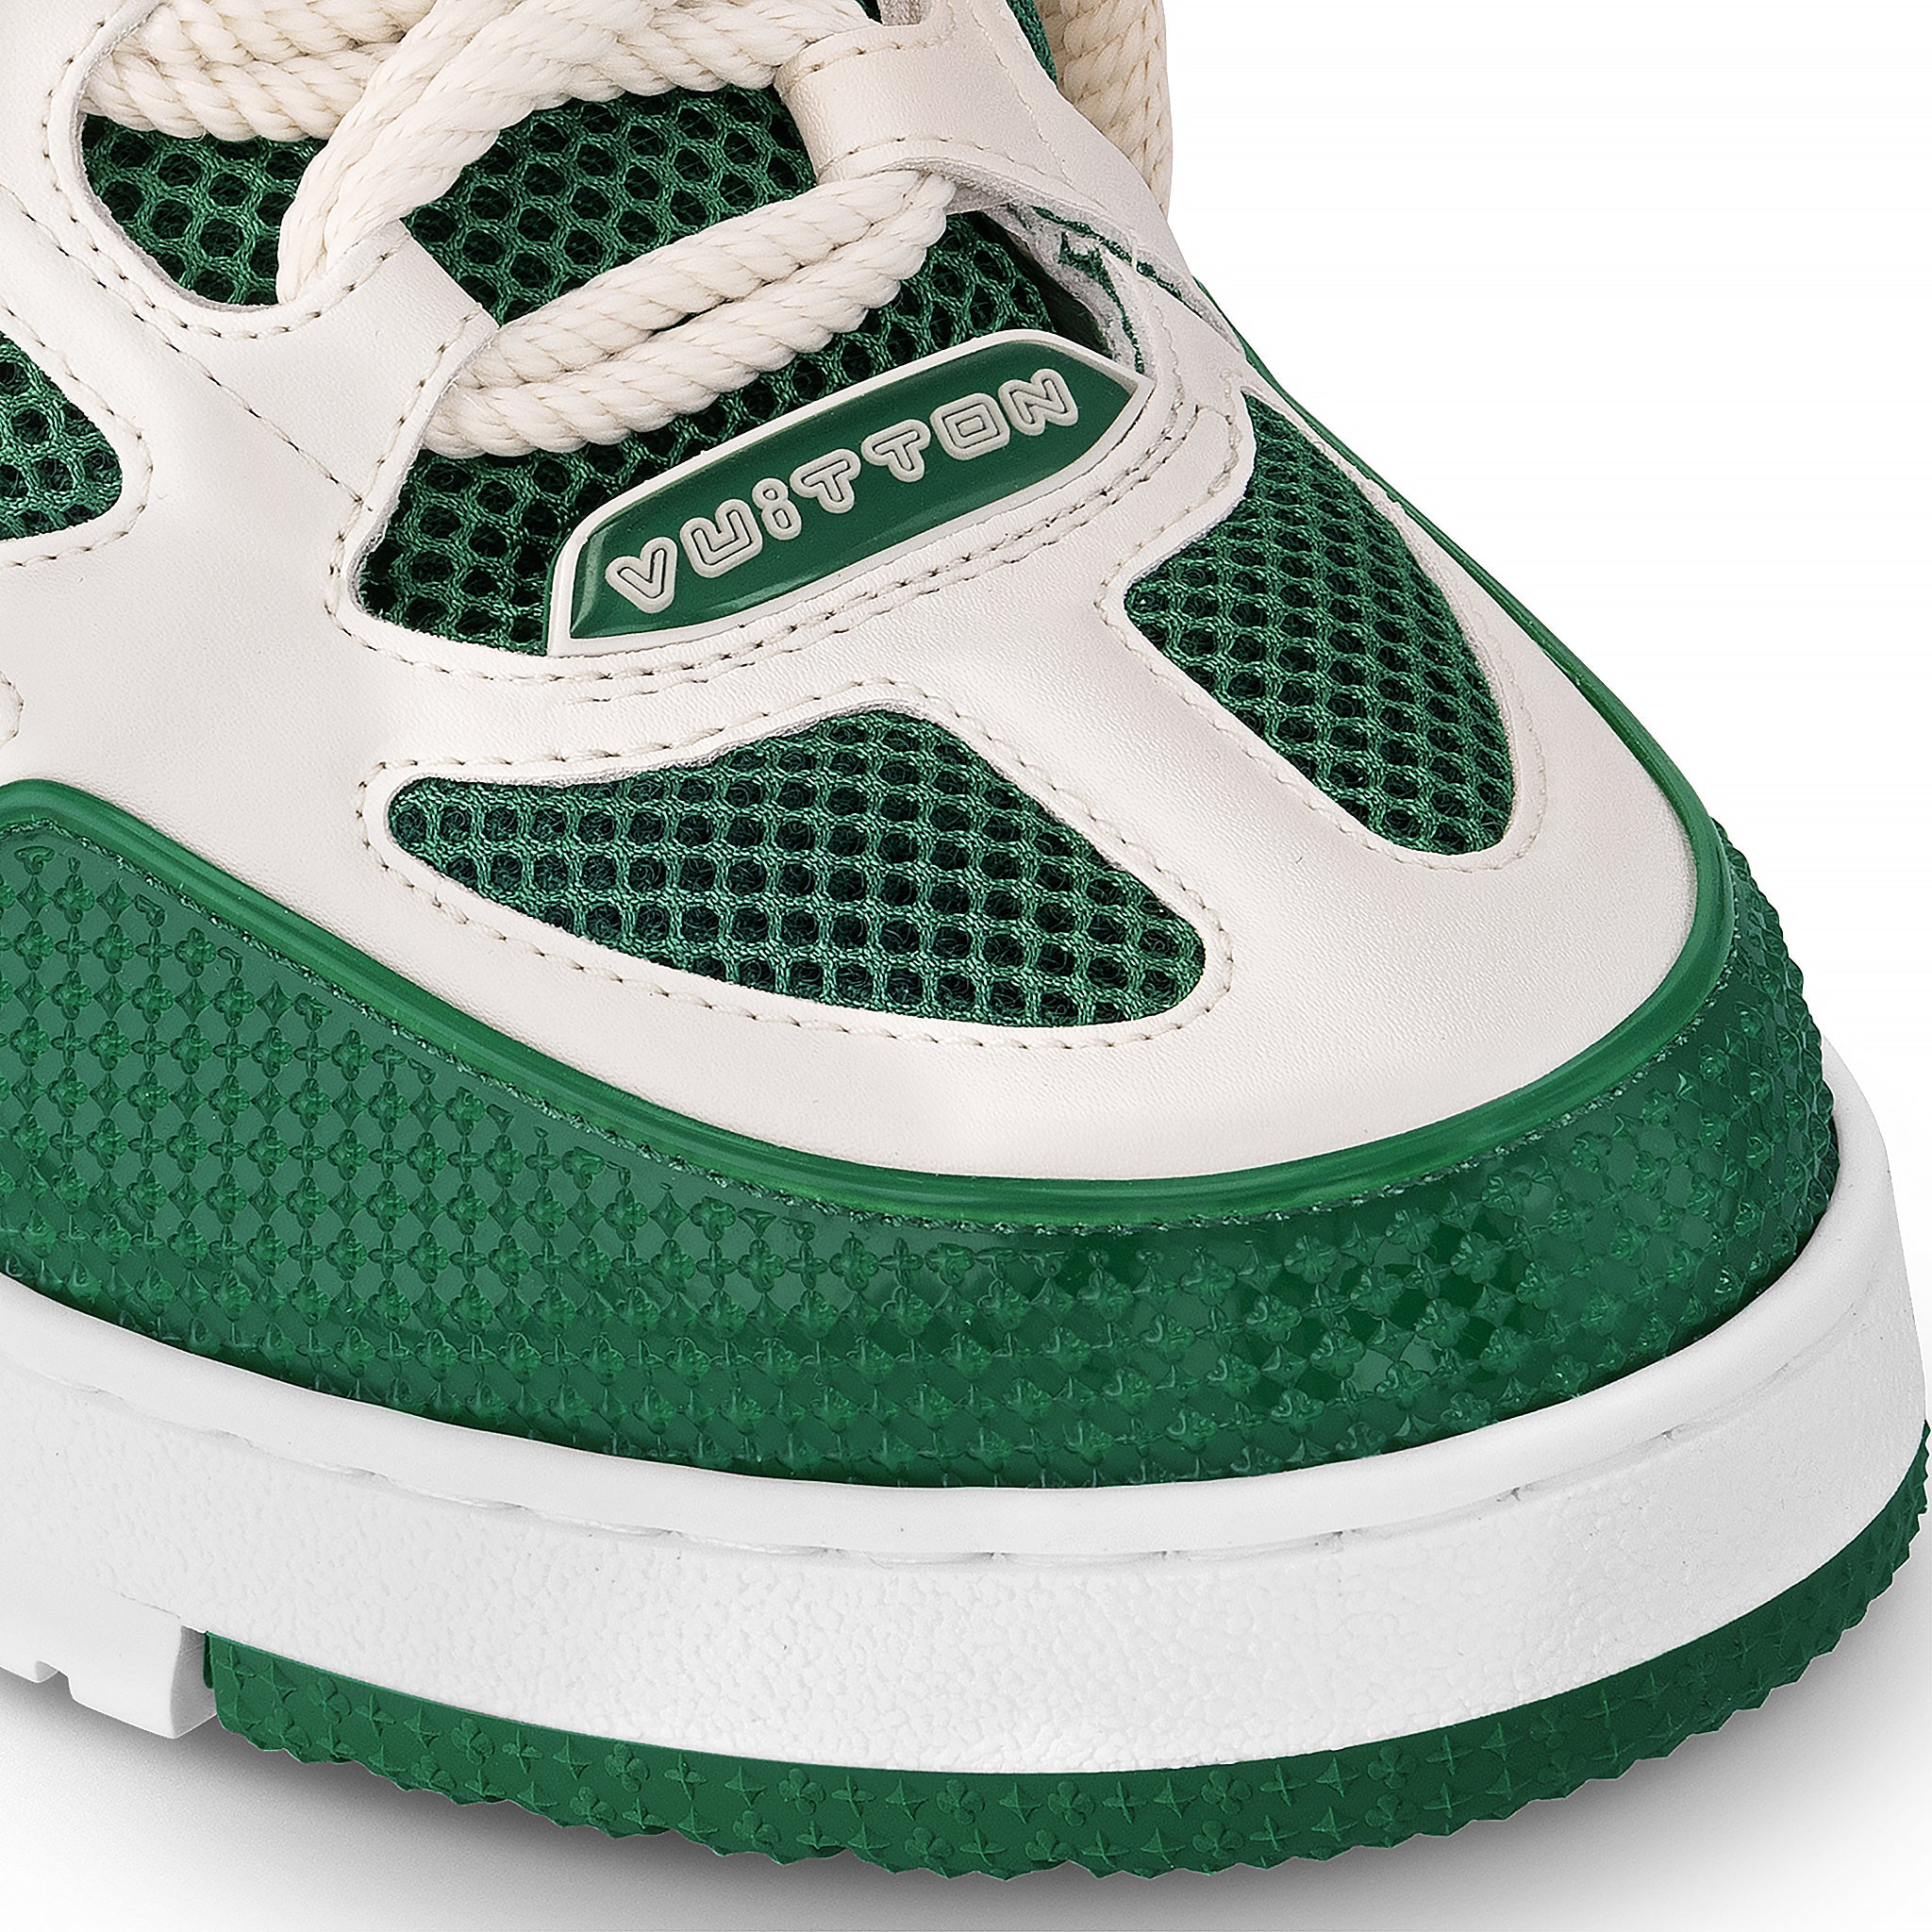 Toe view of Louis Vuitton LV Skate Monogram Trainer Green Sneaker NVPROD4640020V